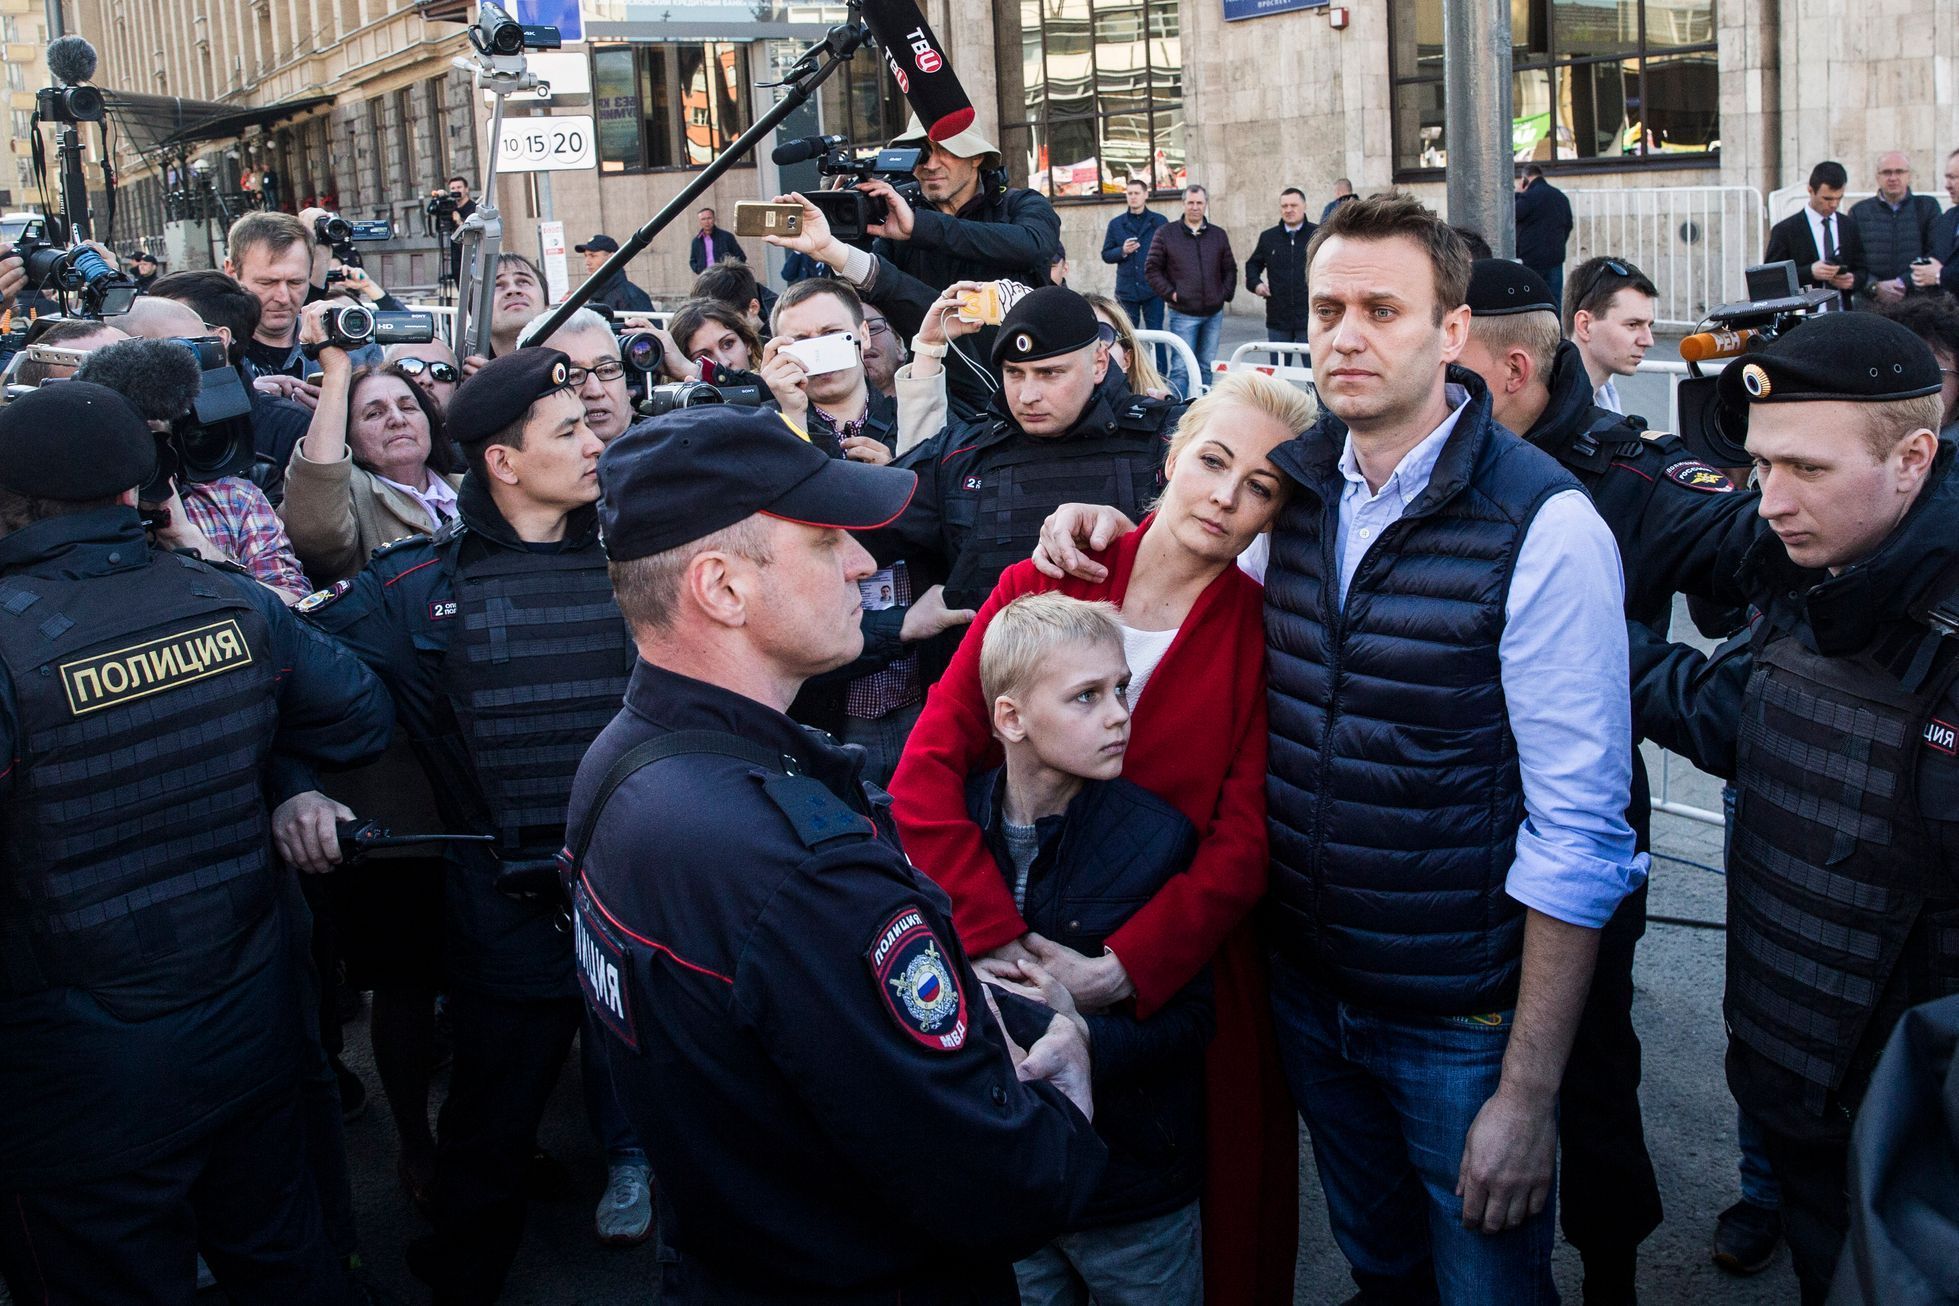 Ruský opozičník Alexej Navalnyj